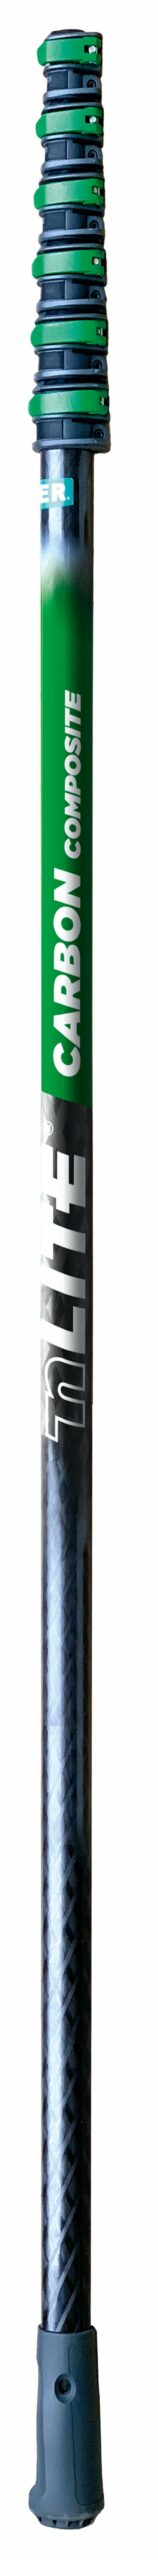 UNGER Carbon Composite Master Pole 6 Section – 8.6M (CC85T)